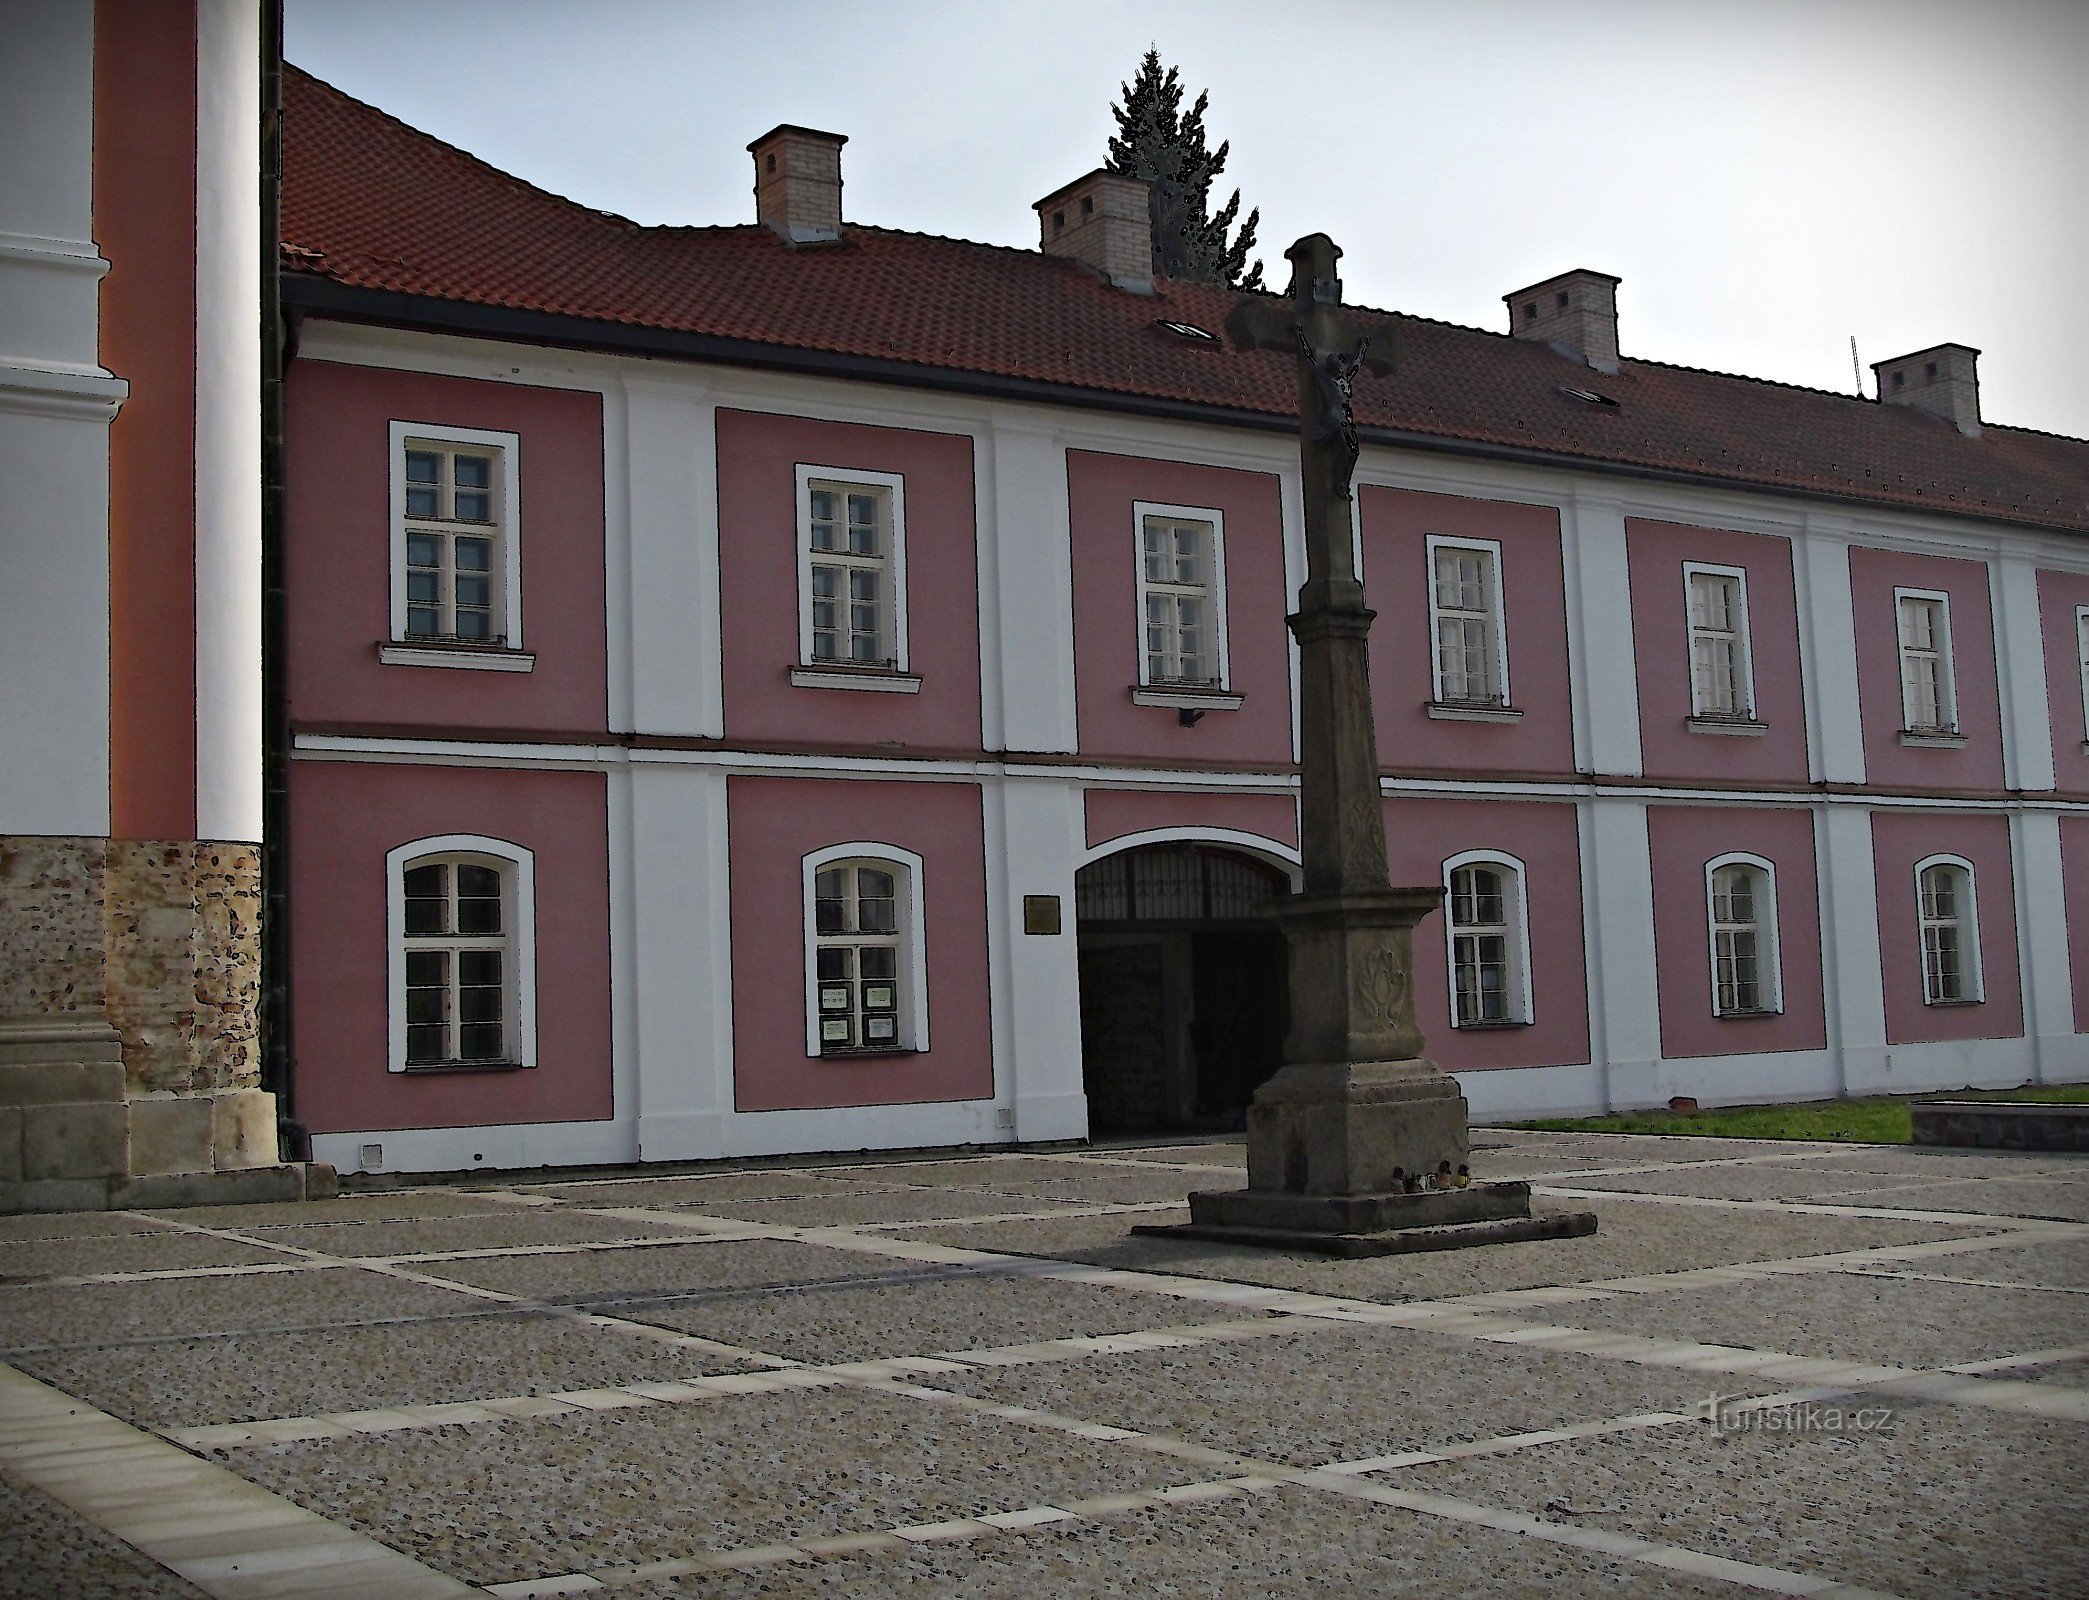 Štípa gần Zlín - địa điểm của nhà thờ hành hương